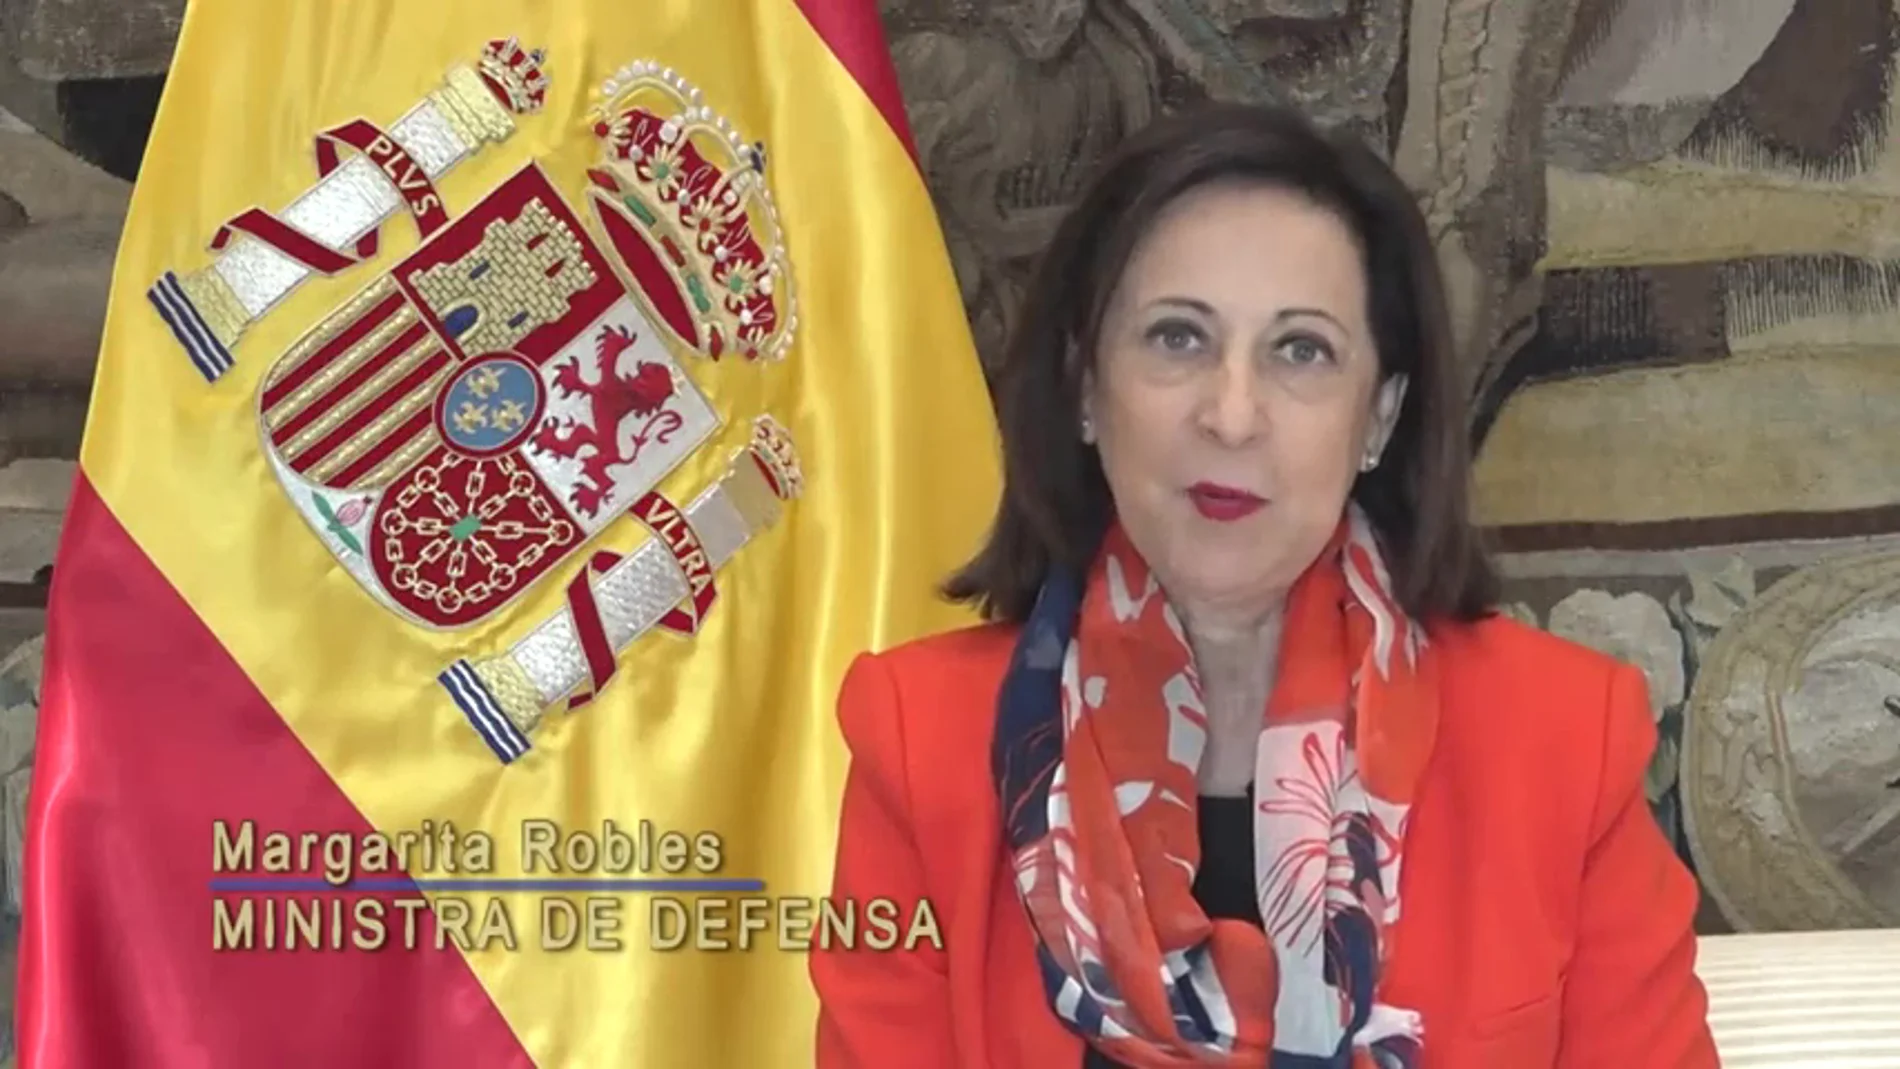 Margarita Robles defiende el papel de los hombres y mujeres de las Fuerzas Armadas: "Defendéis los mejores valores de este país, de una España unida"